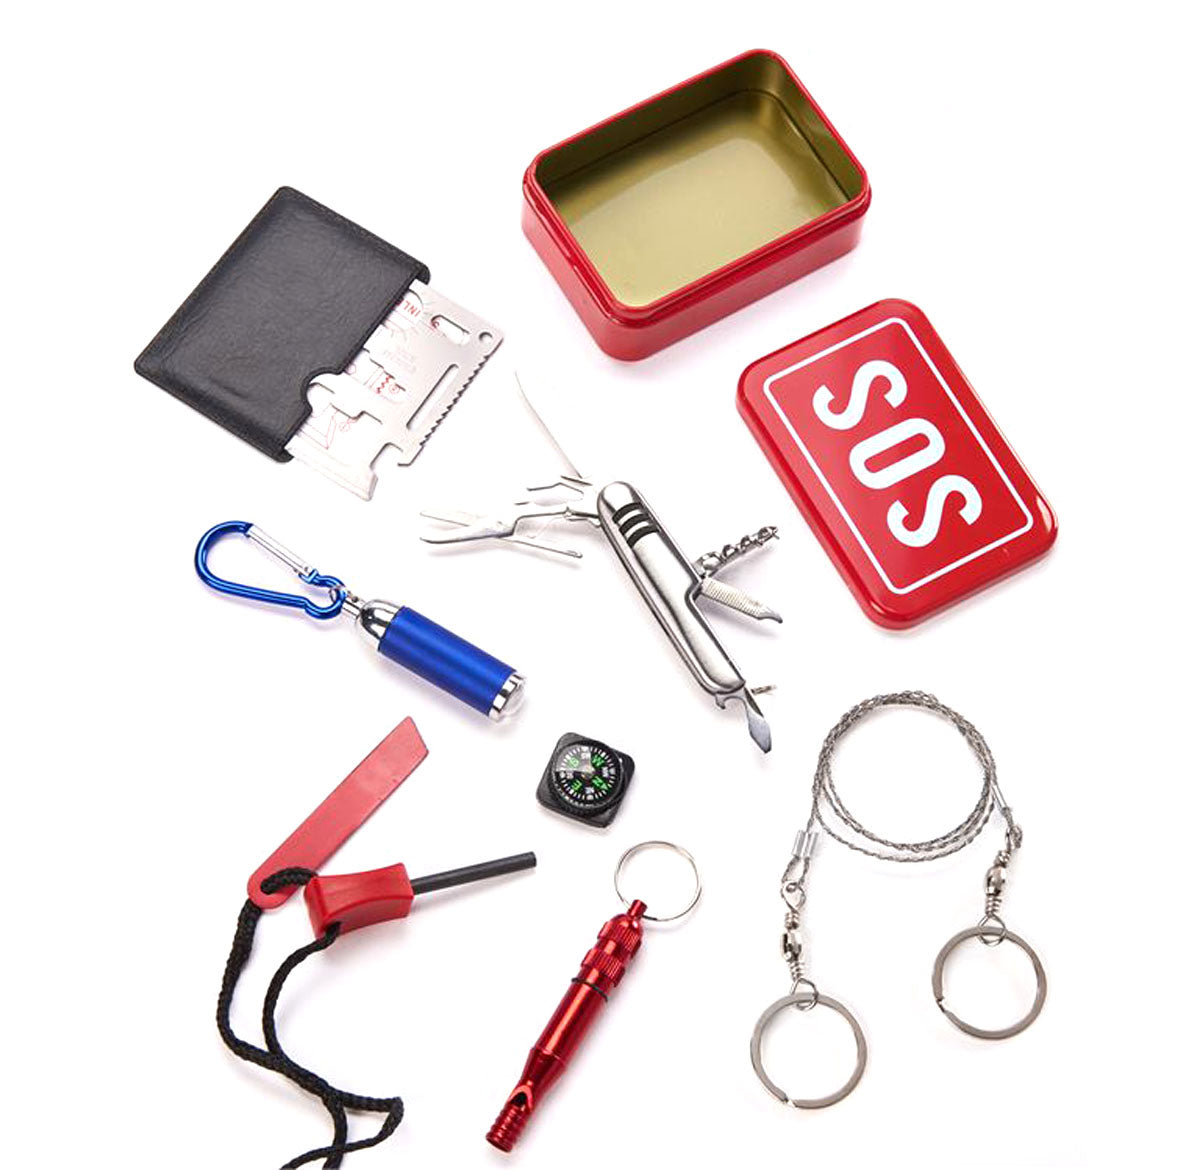 SOS Tin Survival Kit